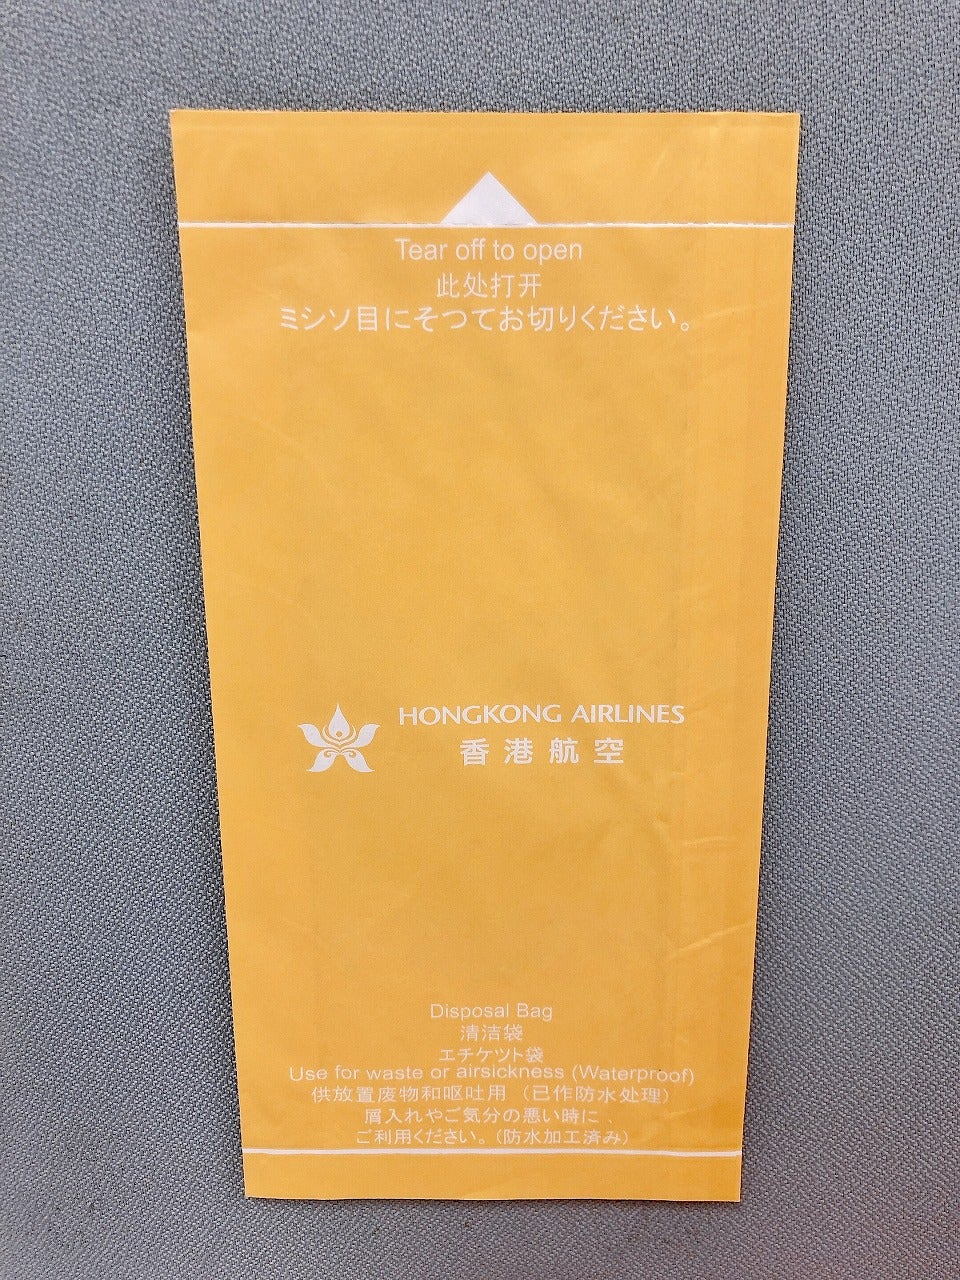 日本エアシステムのエチケット袋とルートマップ